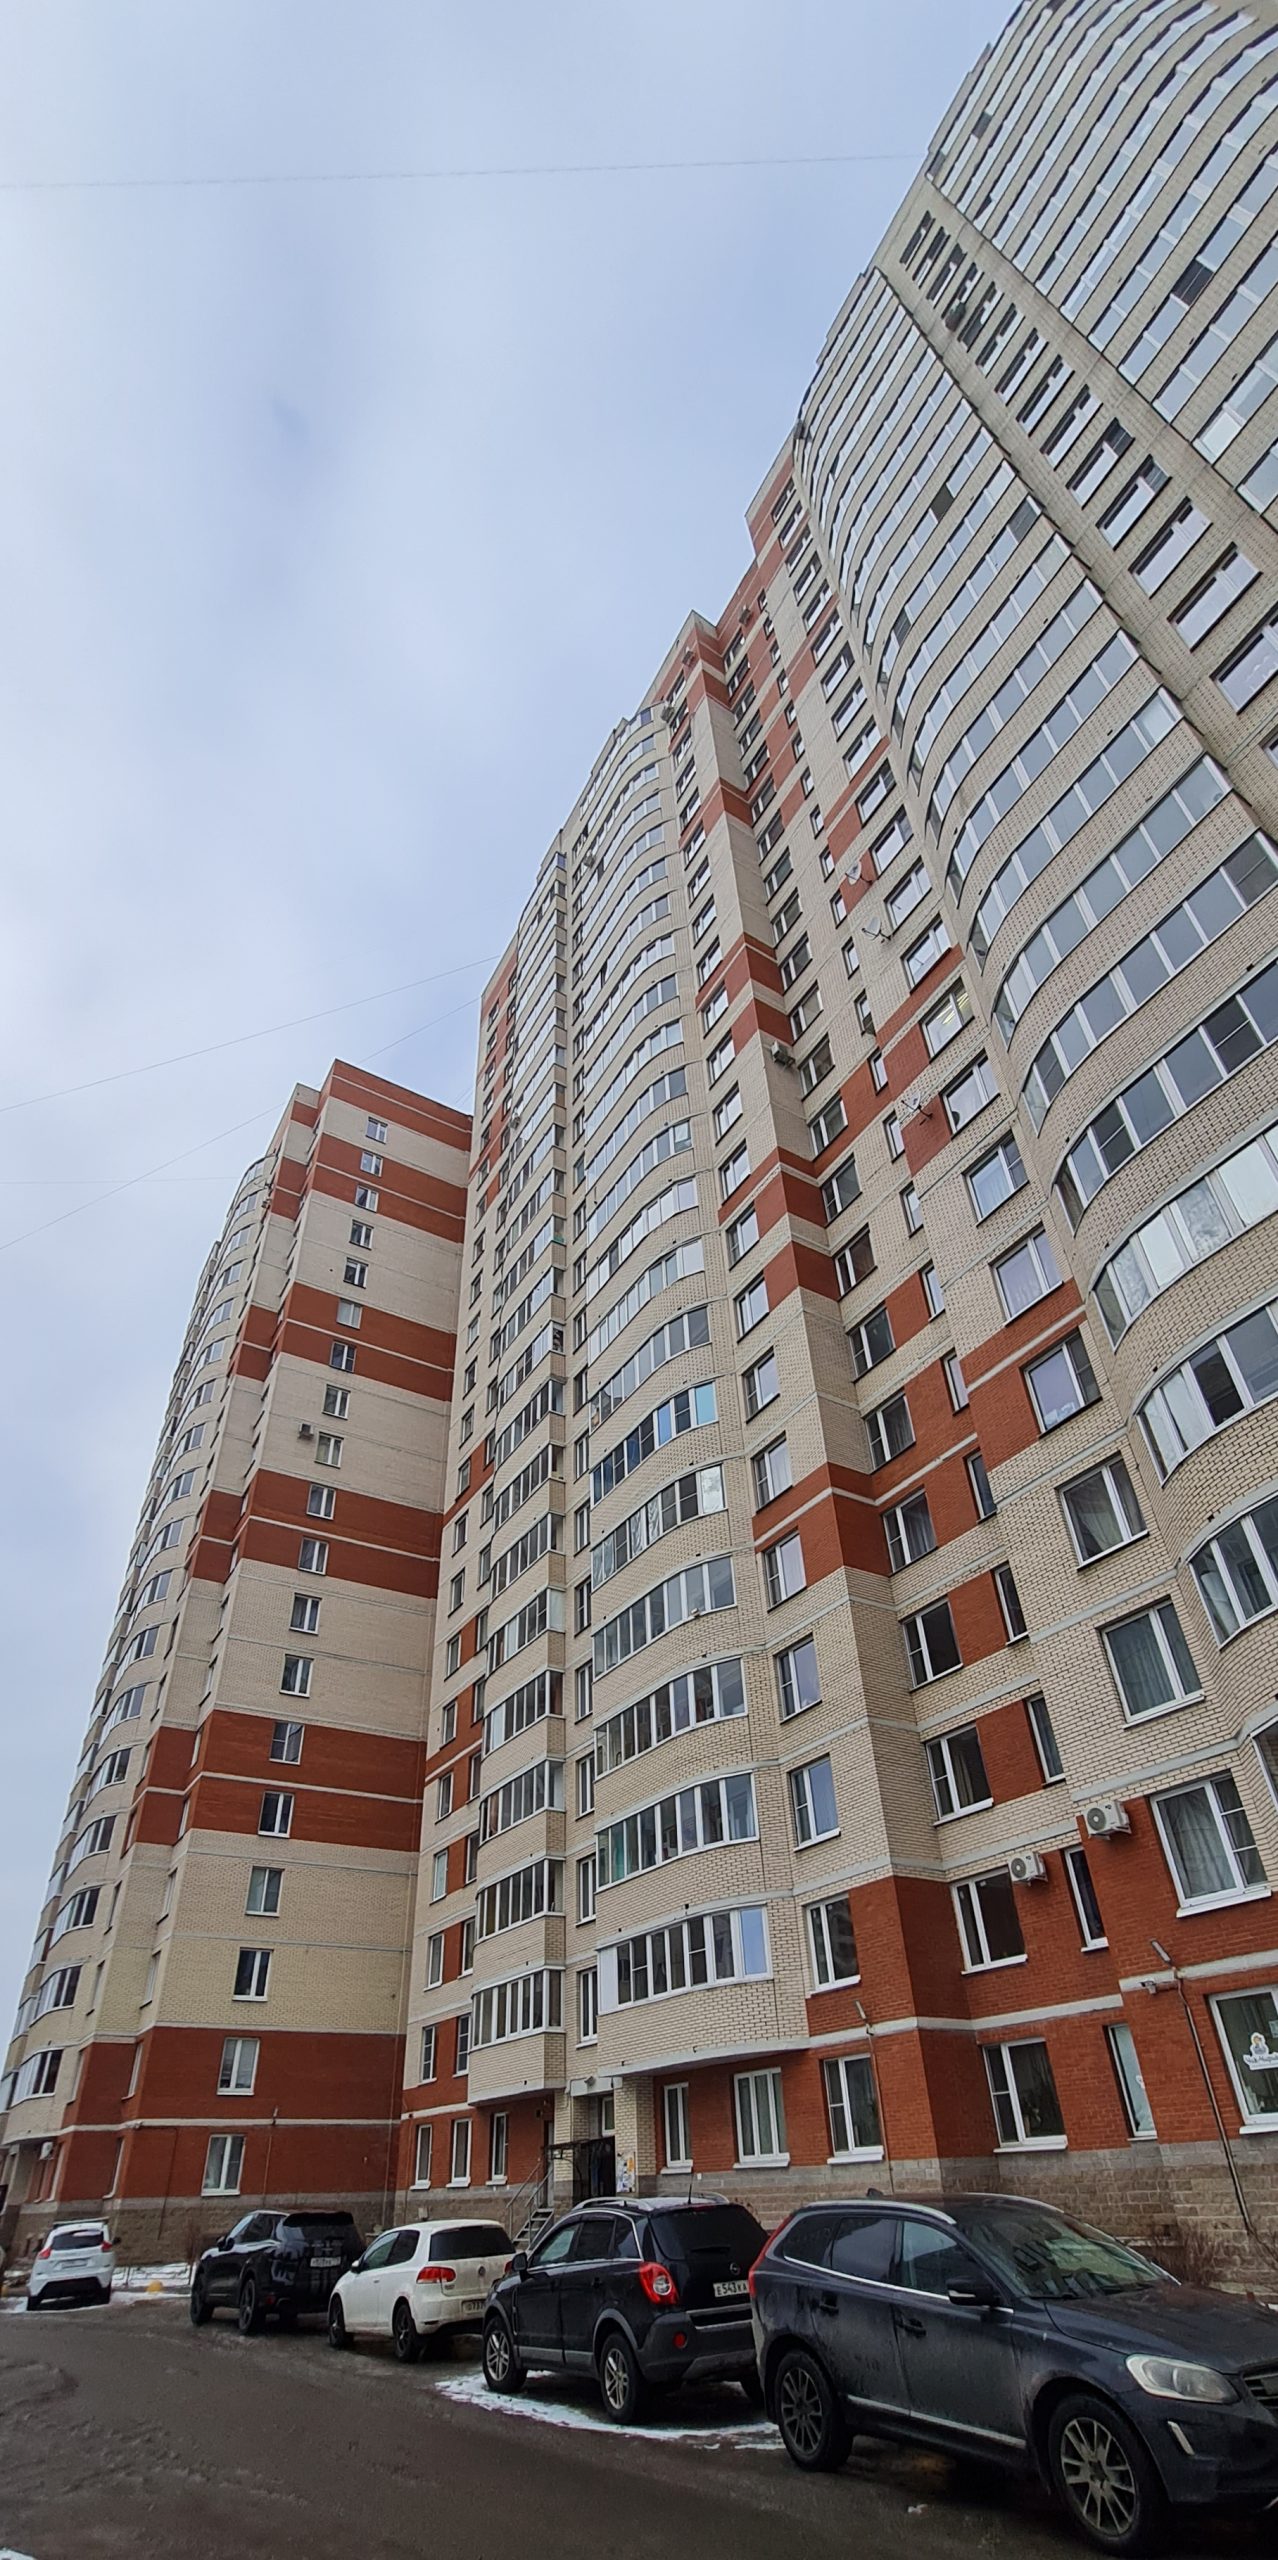 Продается 2Е квартира 42,4м2 на 14 эт. ЖК «Ладожский парк», ул. Ворошилова 29,к.1.